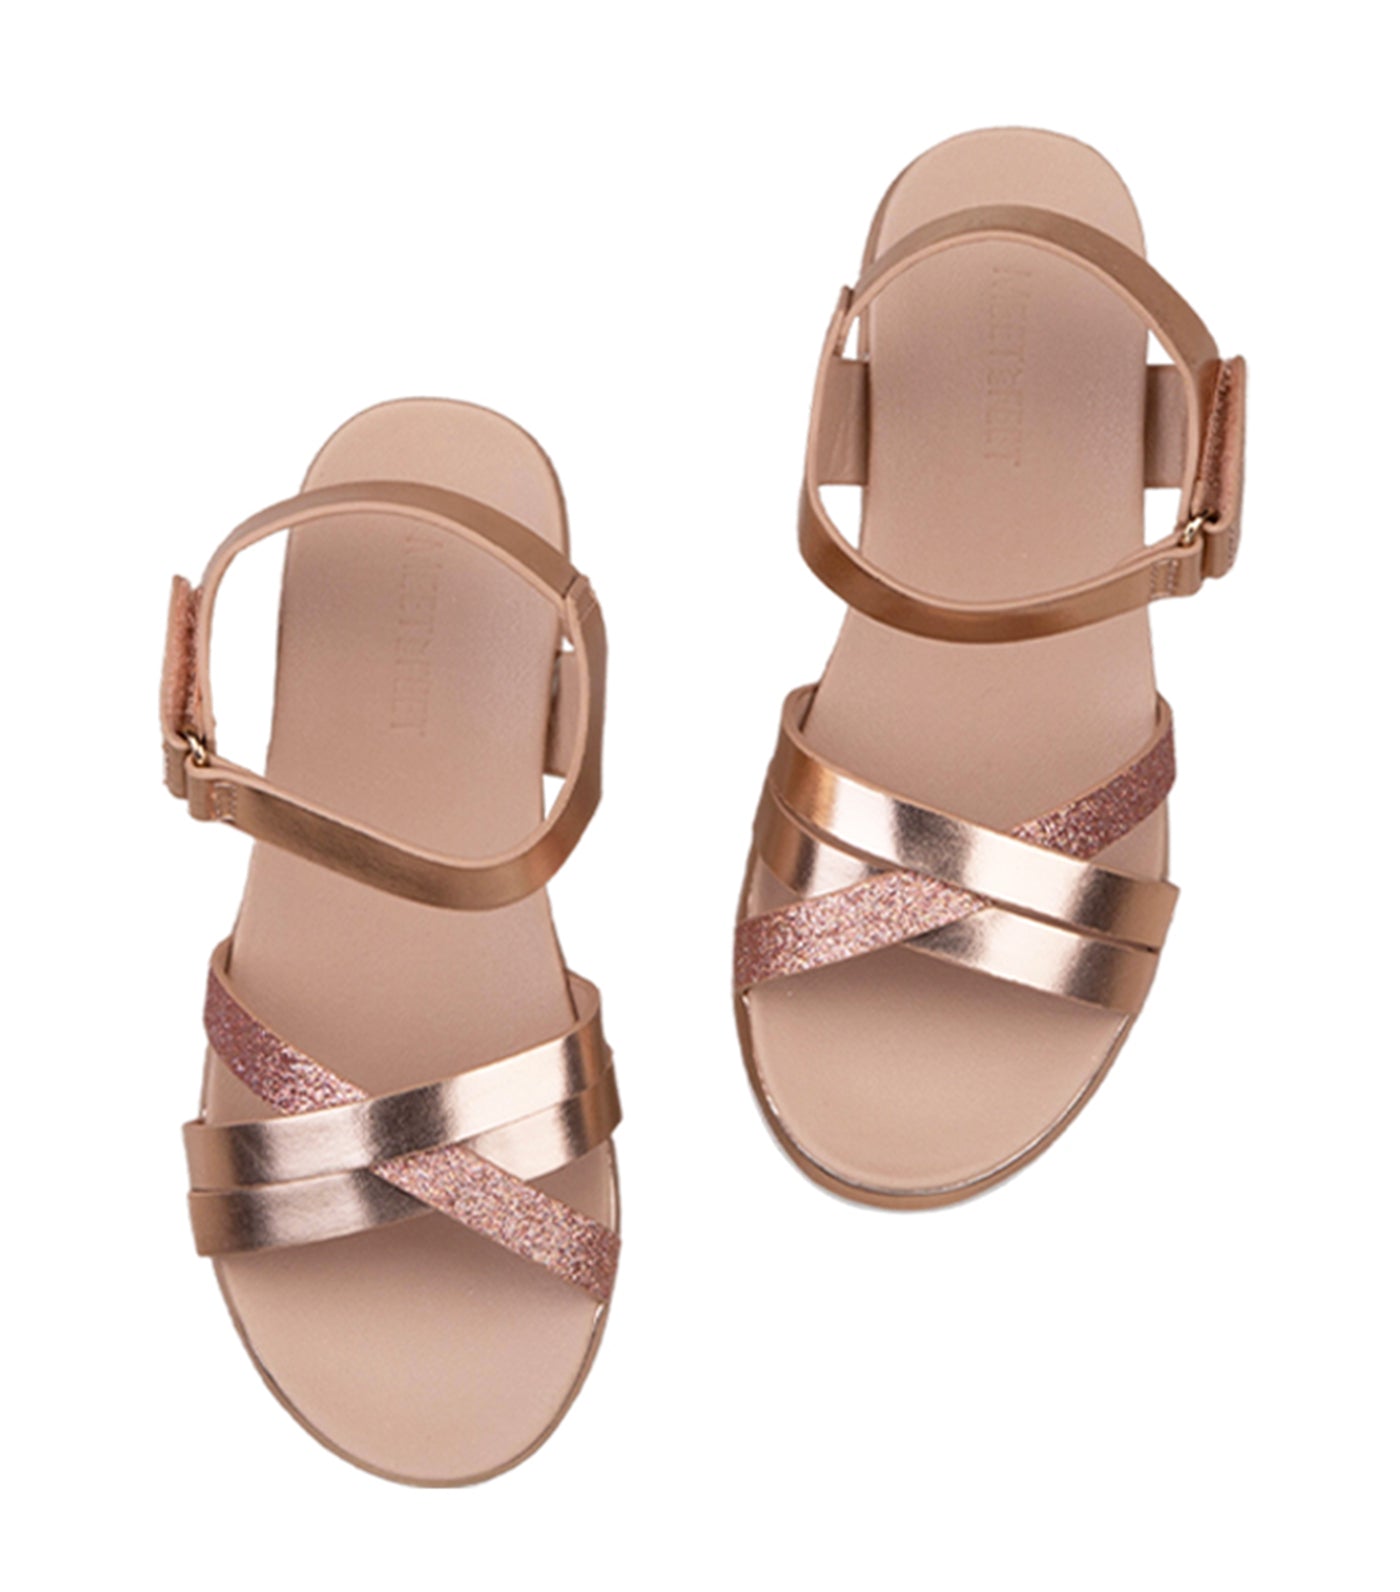 Bobbie Kids Sandals for Girls - Rosegold